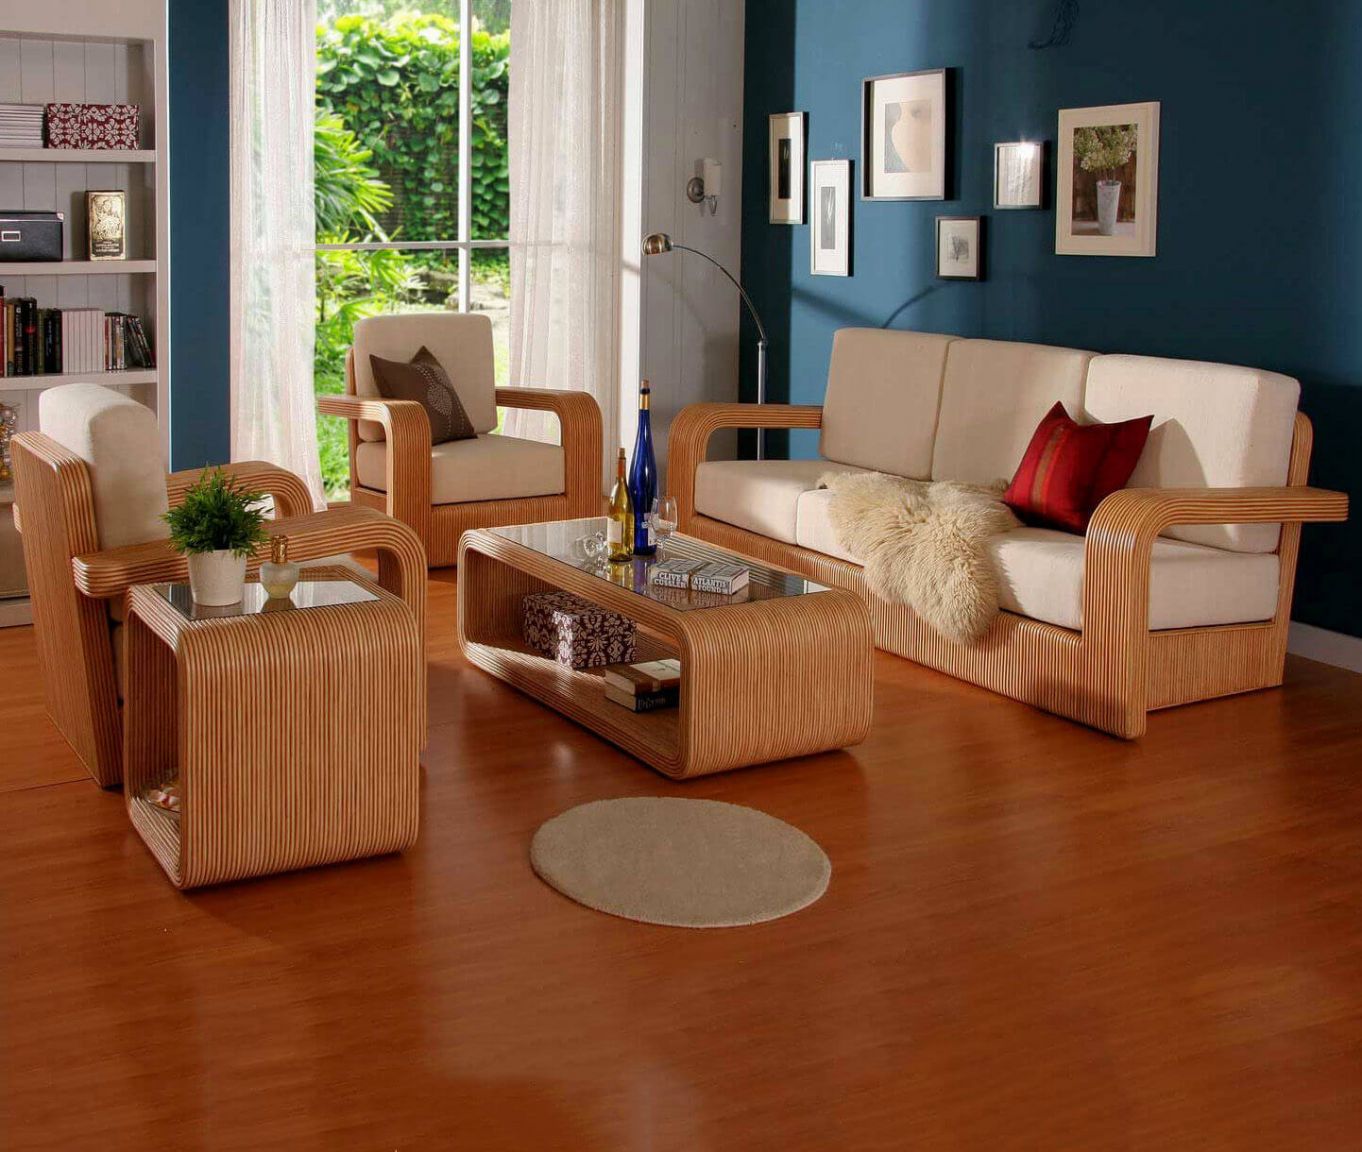 Mẫu bàn ghế gỗ phòng khách cách điệu, hiện đại